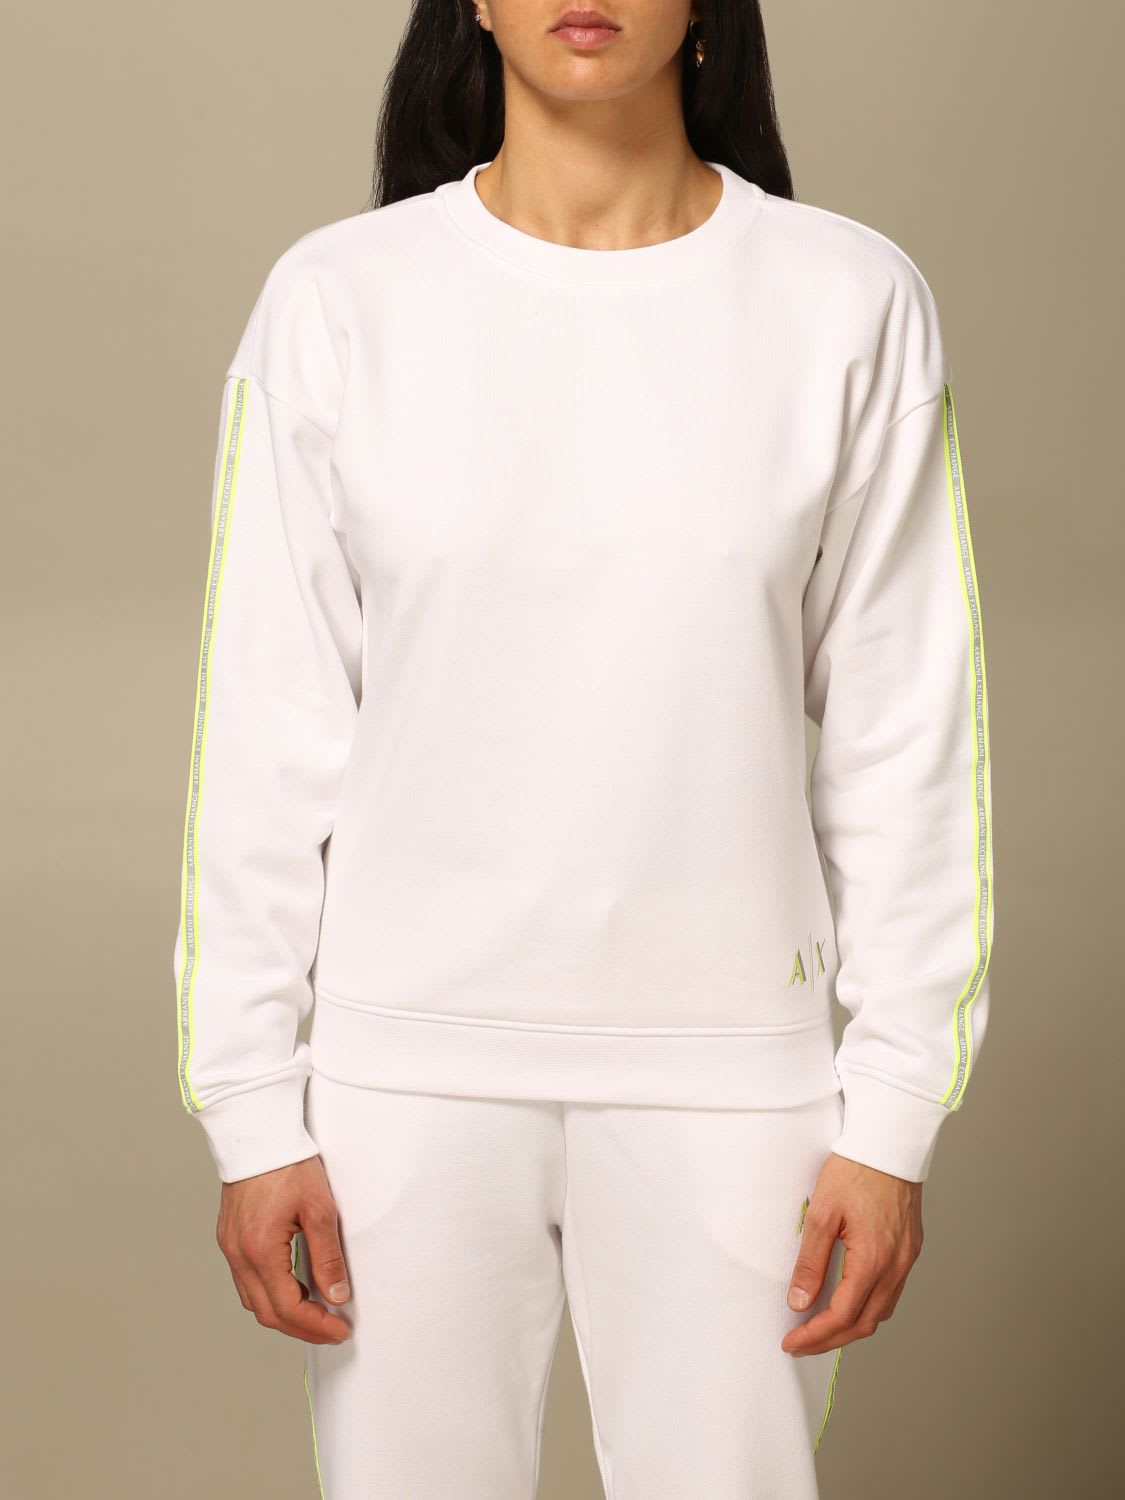 Armani Collezioni Armani Exchange Sweatshirt Armani Exchange Crewneck Sweatshirt With Logo In White